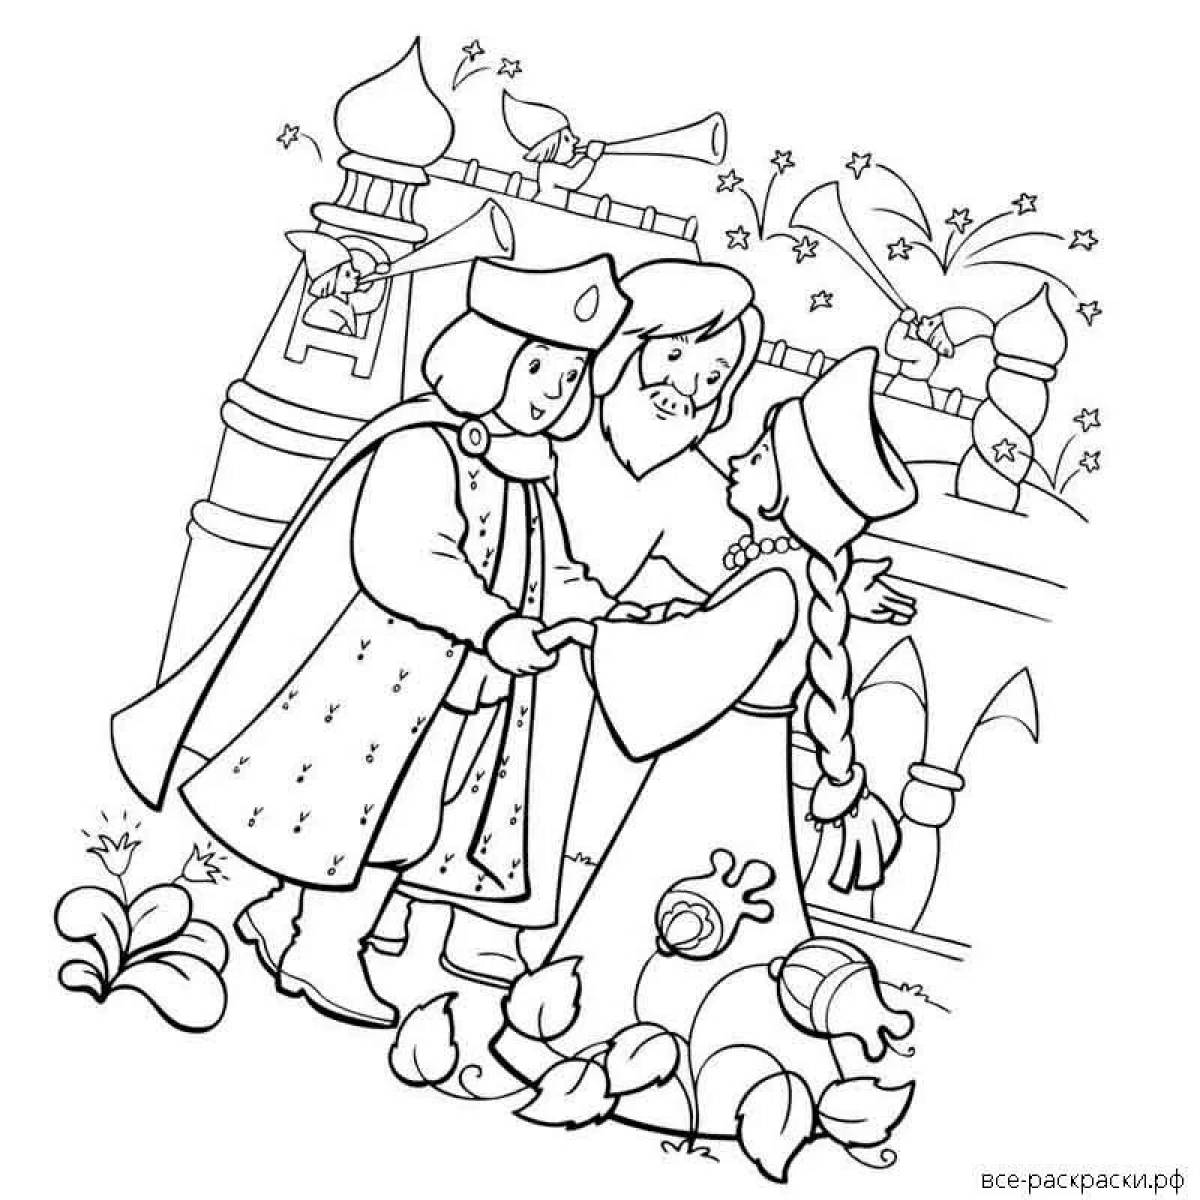 Иллюстрация к сказке аленький цветочек детский рисунок